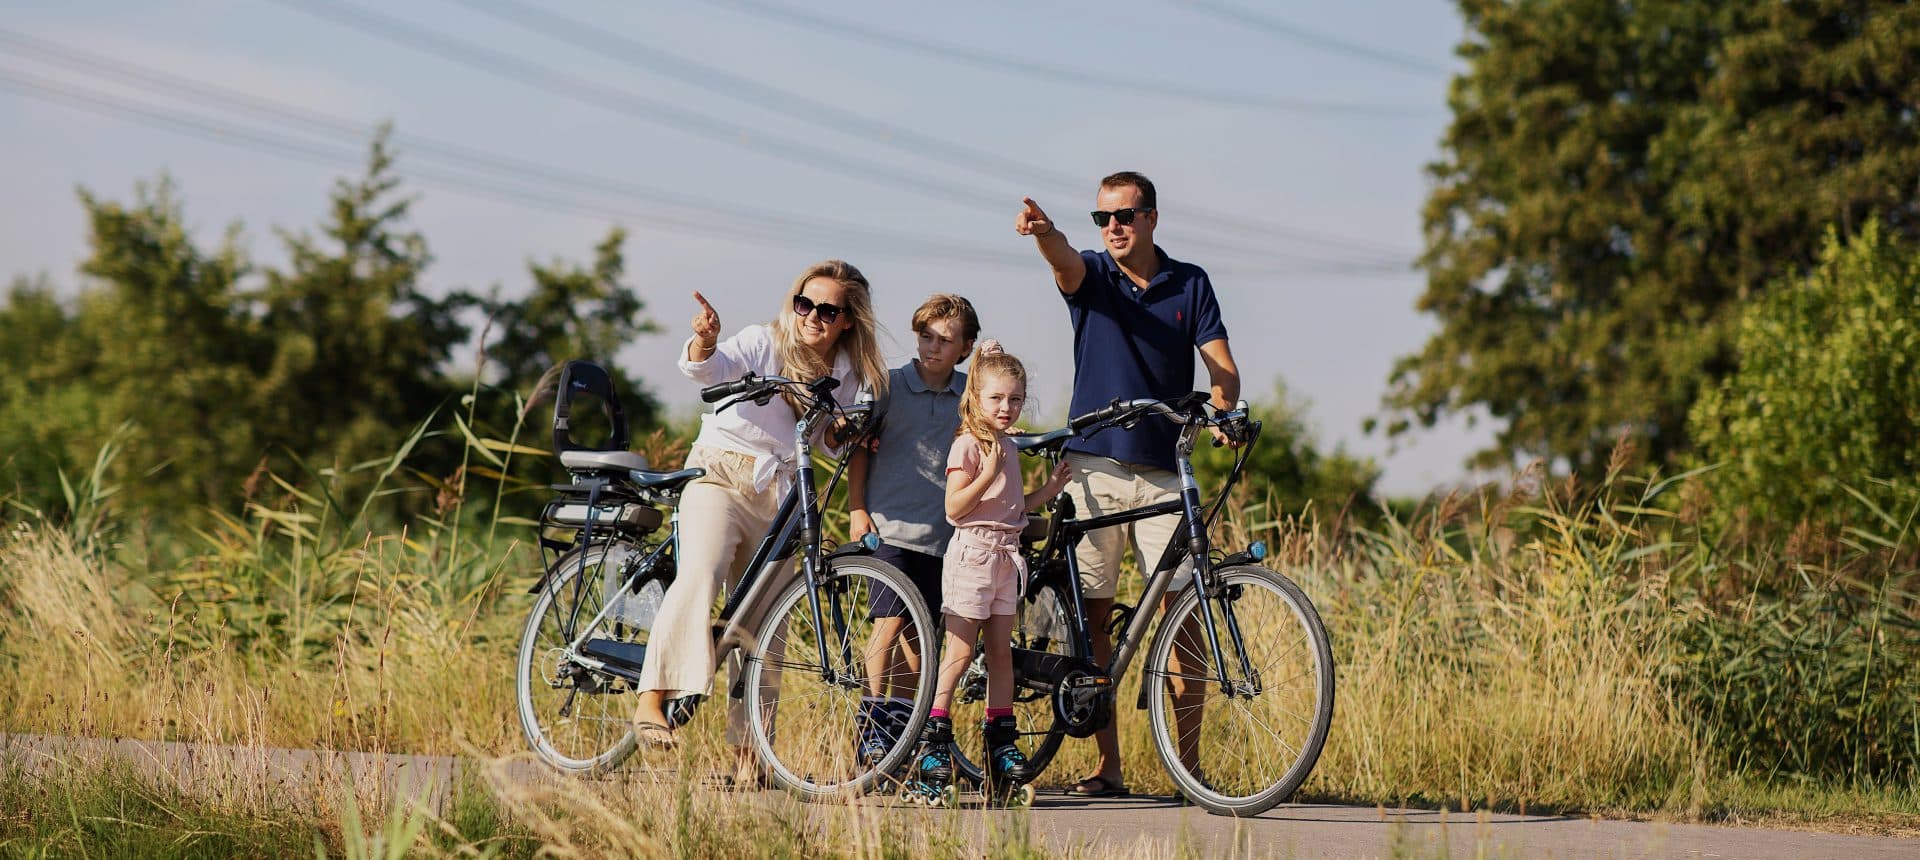 Nieuwe Dordtse Biesbosch fietsen gezin natuur Dordrecht